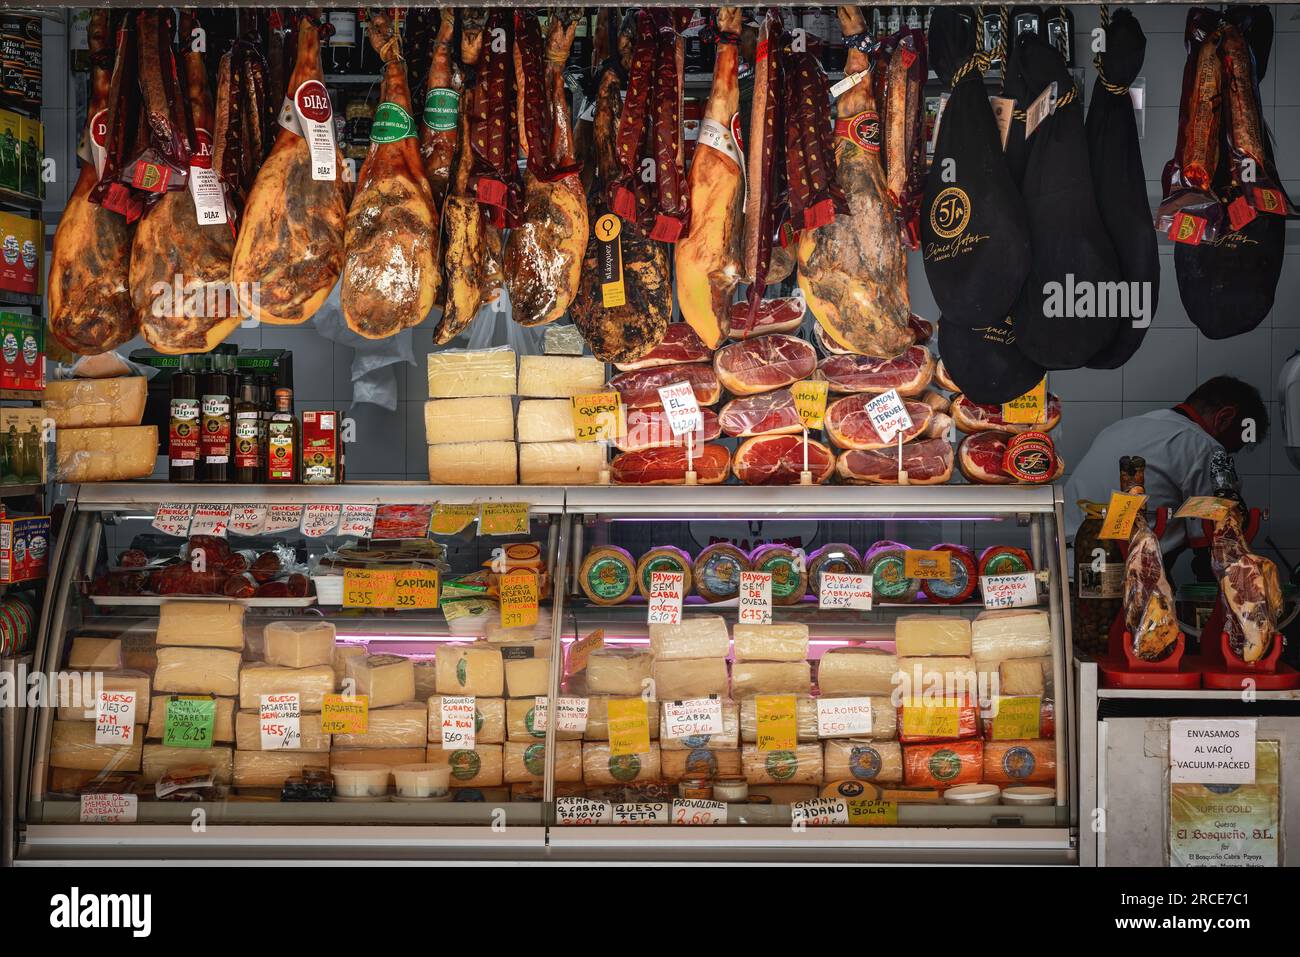 Marktstand mit Stücken Jamon iberico (iberischer Schinken) und Käse - Cadiz, Andalusien, Spanien Stockfoto